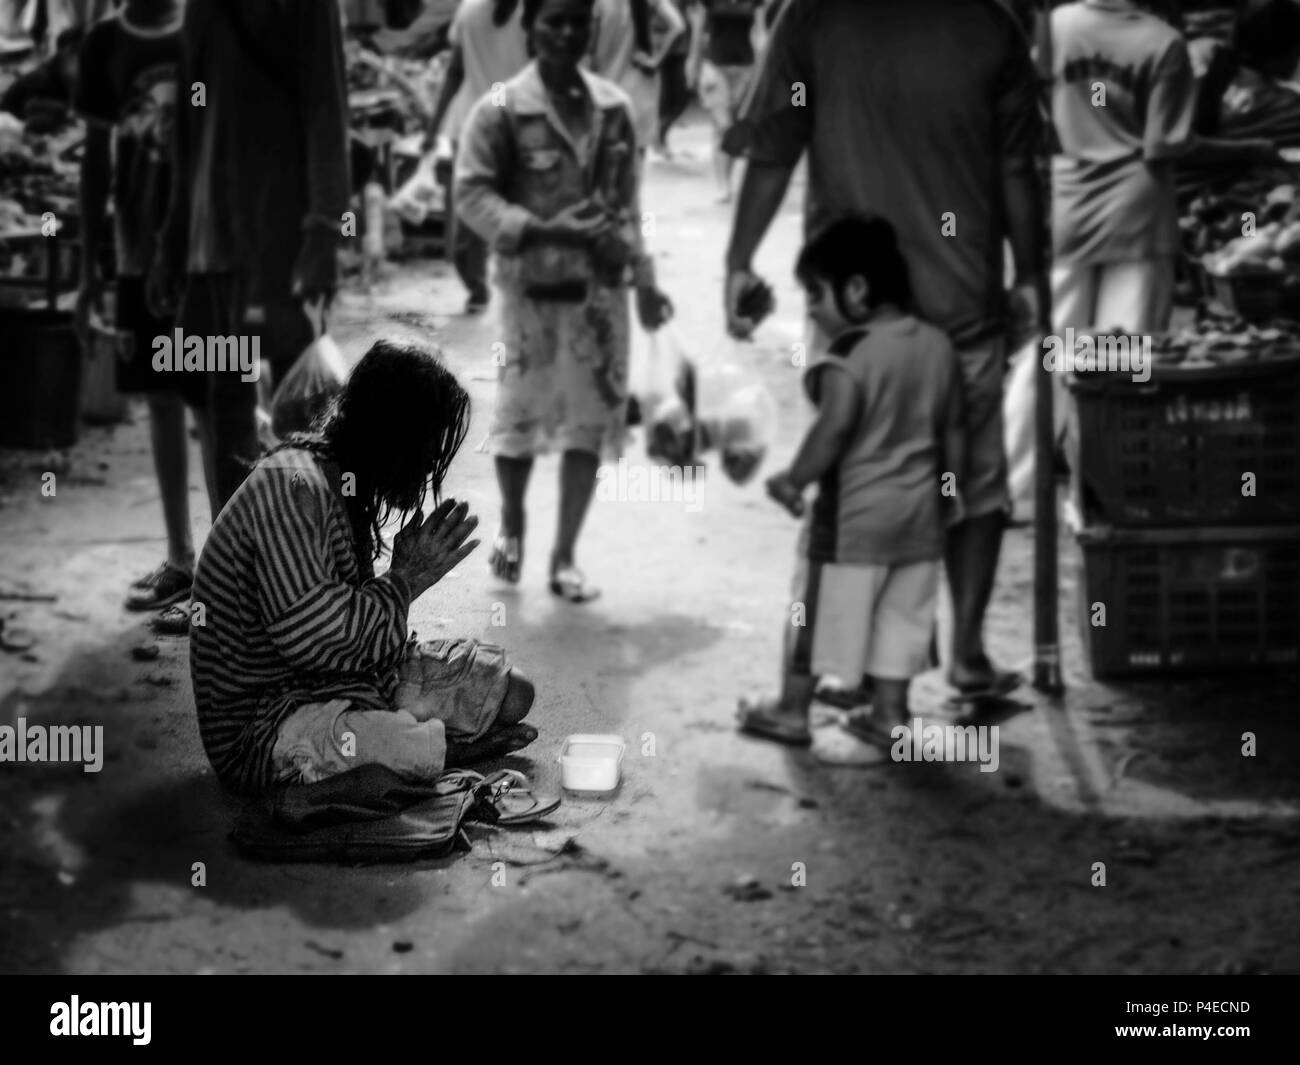 PHUKET, Thailand - 15. MÄRZ 2009: Ein alter Mann oder älteren Menschen, einen Obdachlosen seine Hand bereit für Geld, während ein Mädchen betrachten ihn in frischen Fragen heben Stockfoto